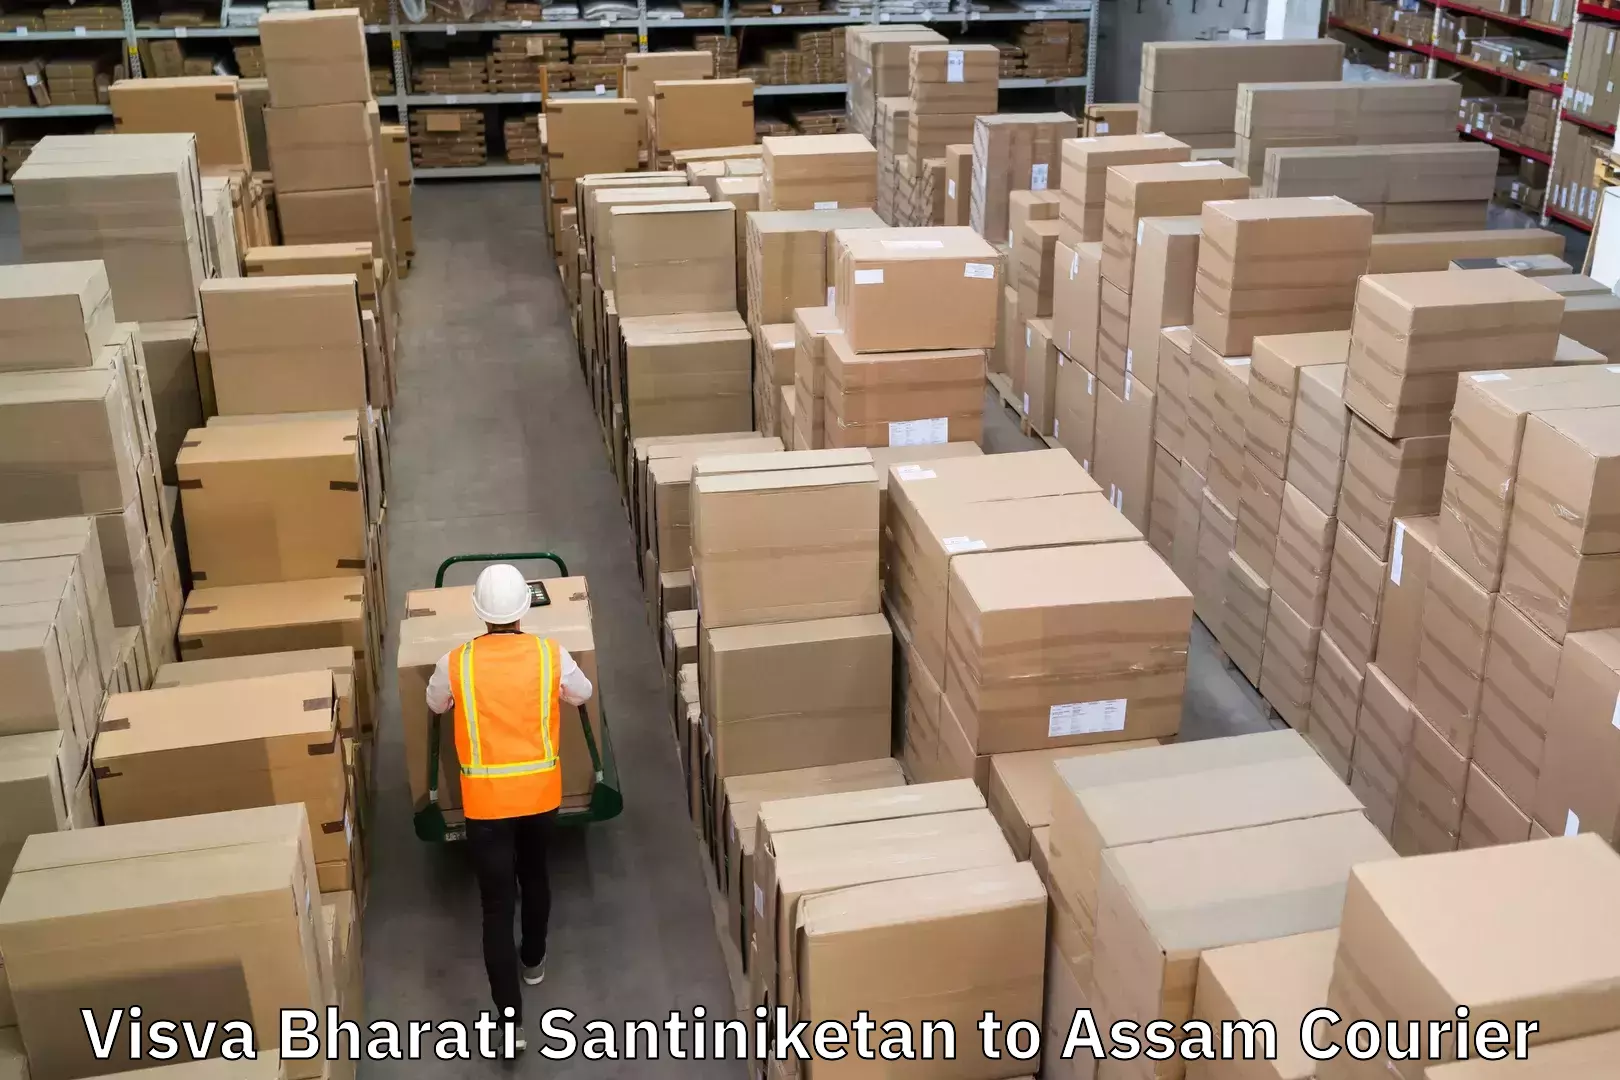 Logistics service provider Visva Bharati Santiniketan to Assam